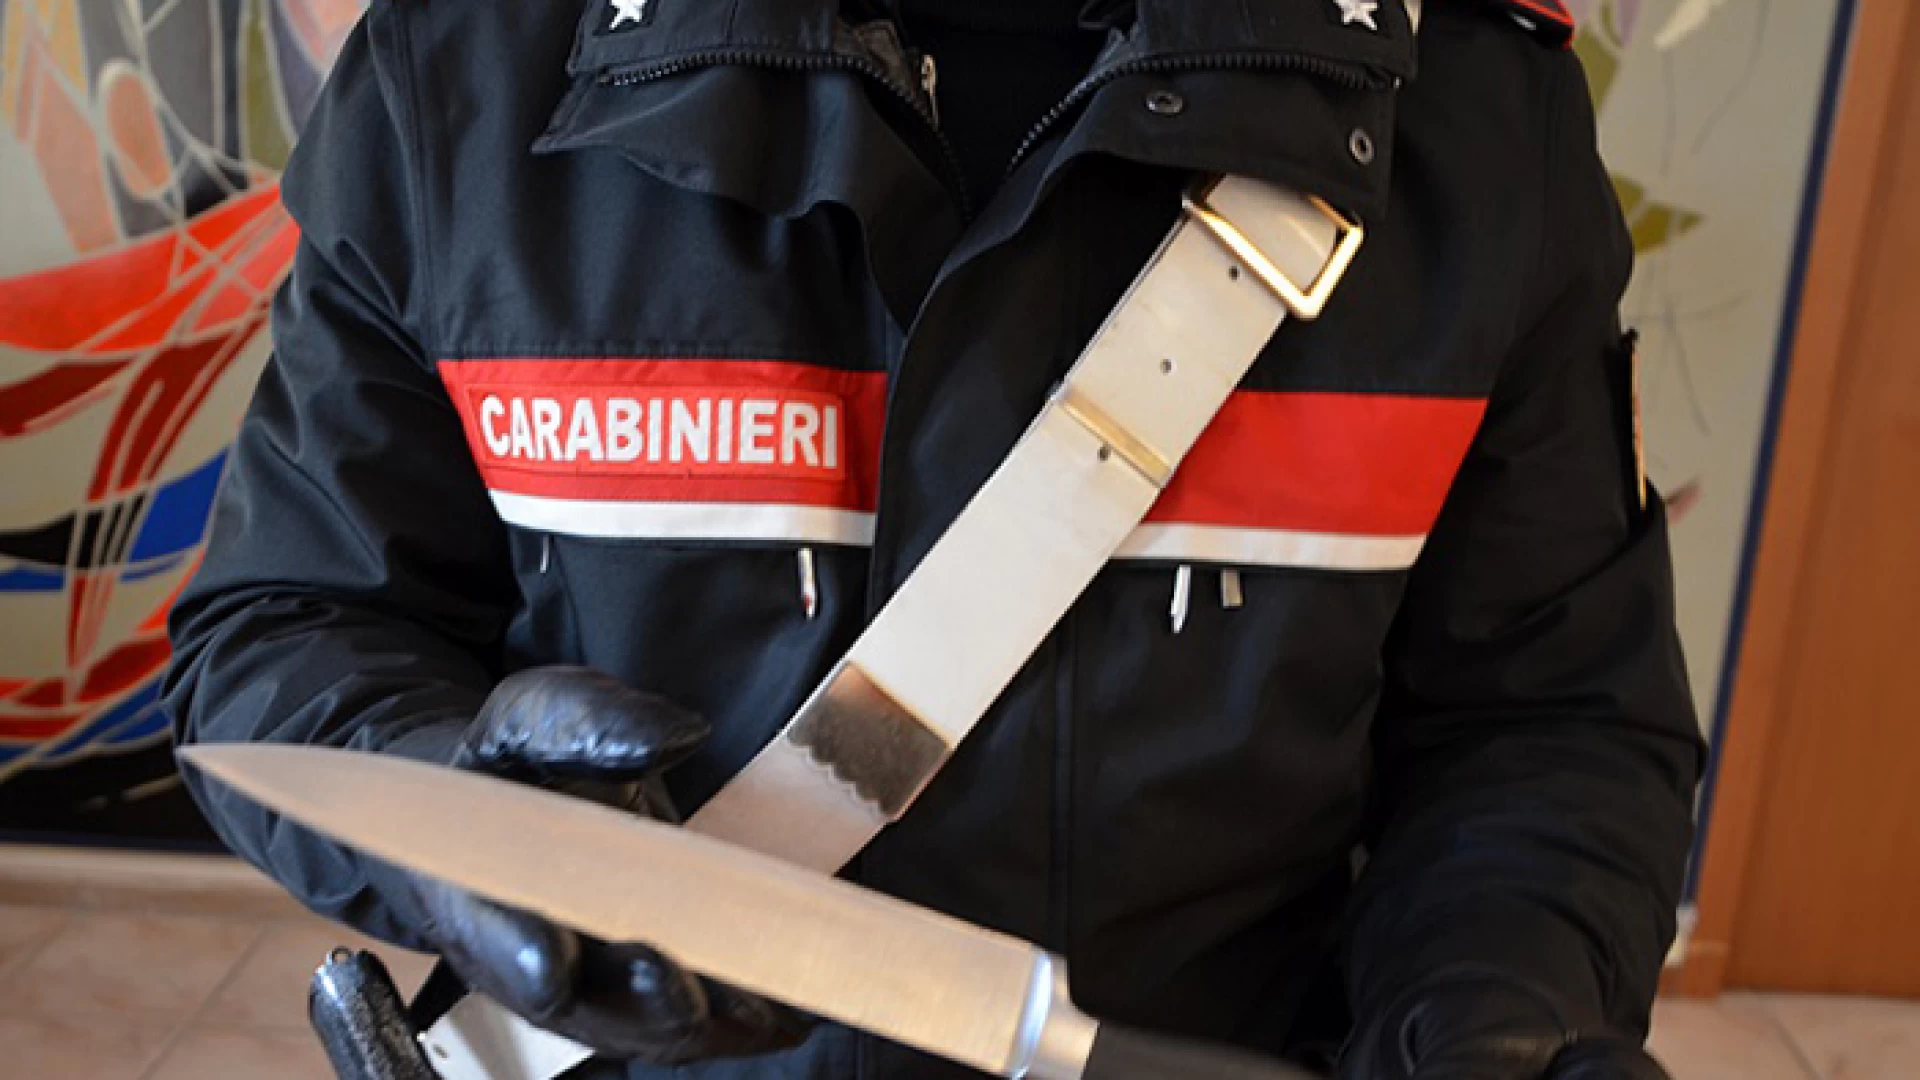 Isernia: Armato di coltello aggredisce il fratello, denunciato dai Carabinieri per minaccia aggravata.